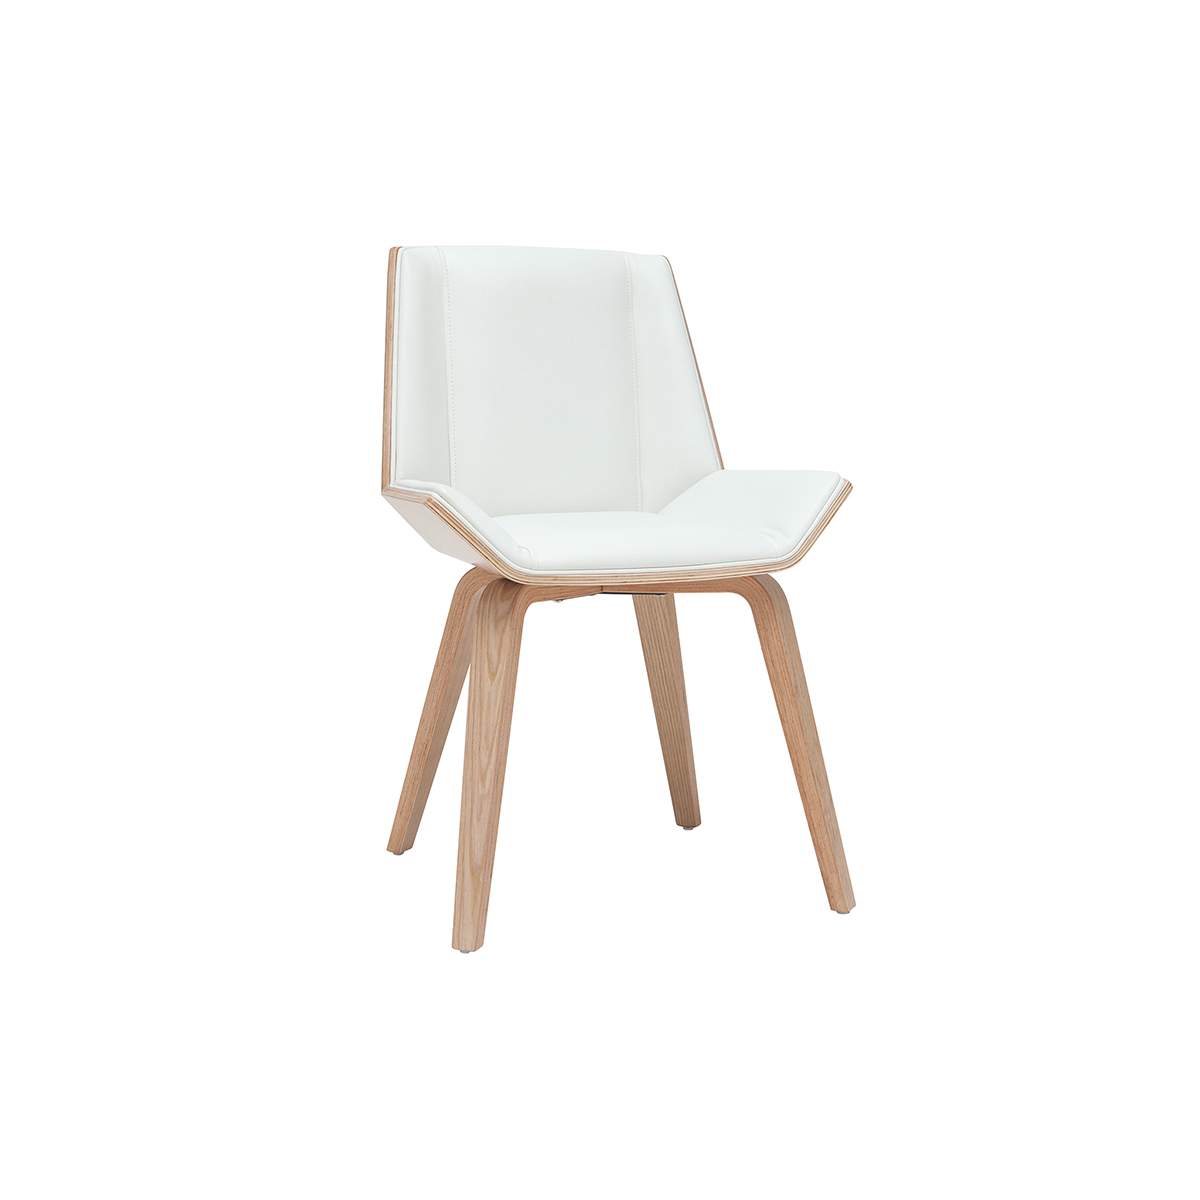 Chaise design blanc et bois clair MELKIOR vue1